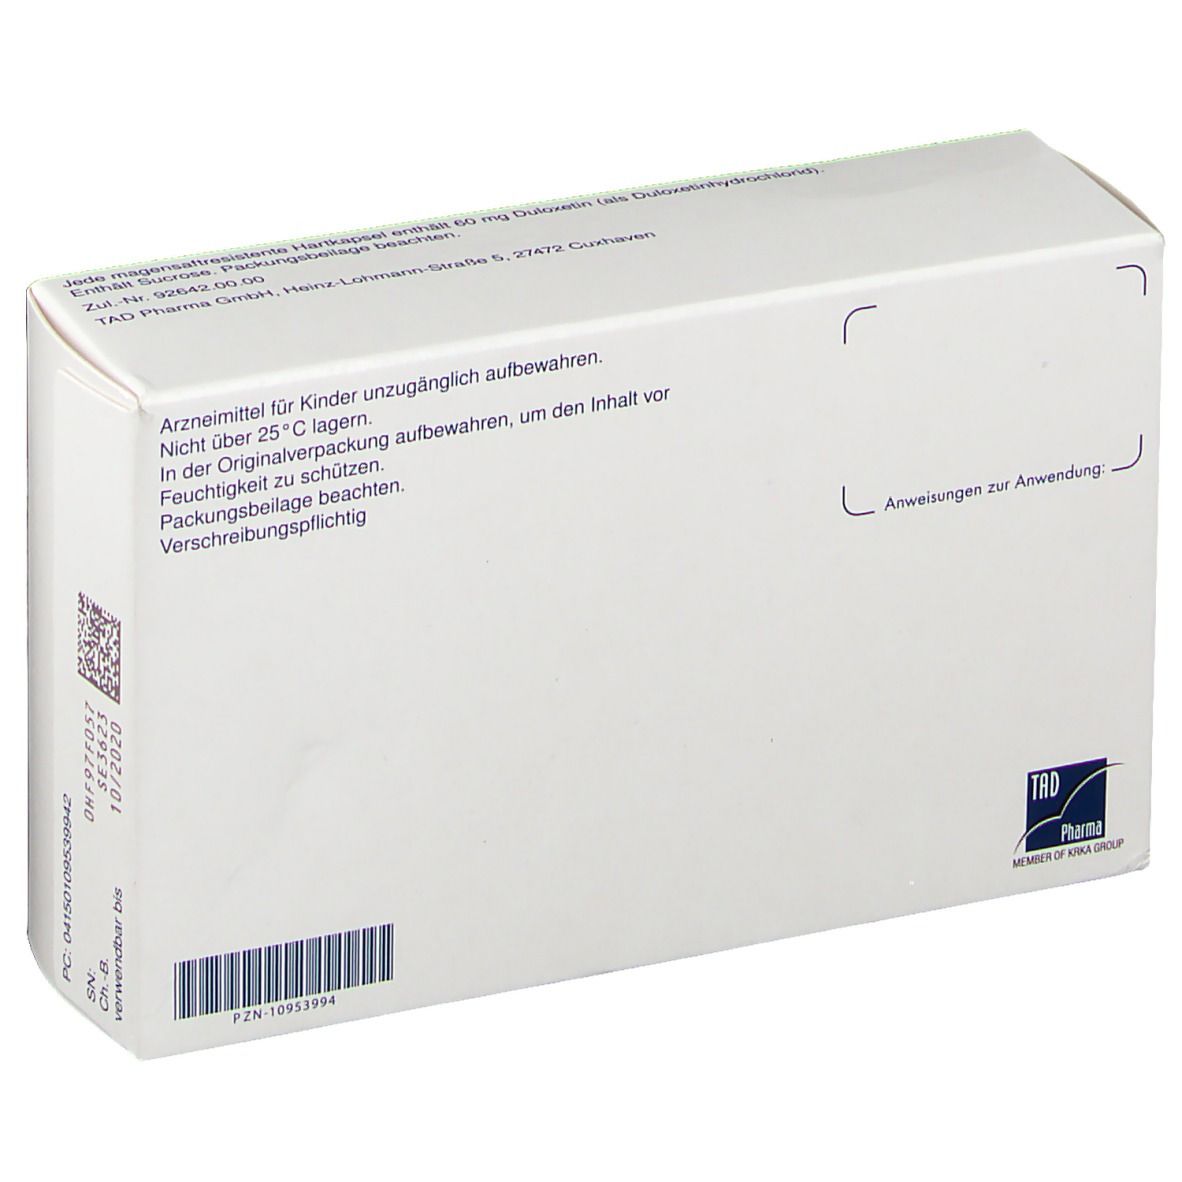 Duloxalte® 60 mg